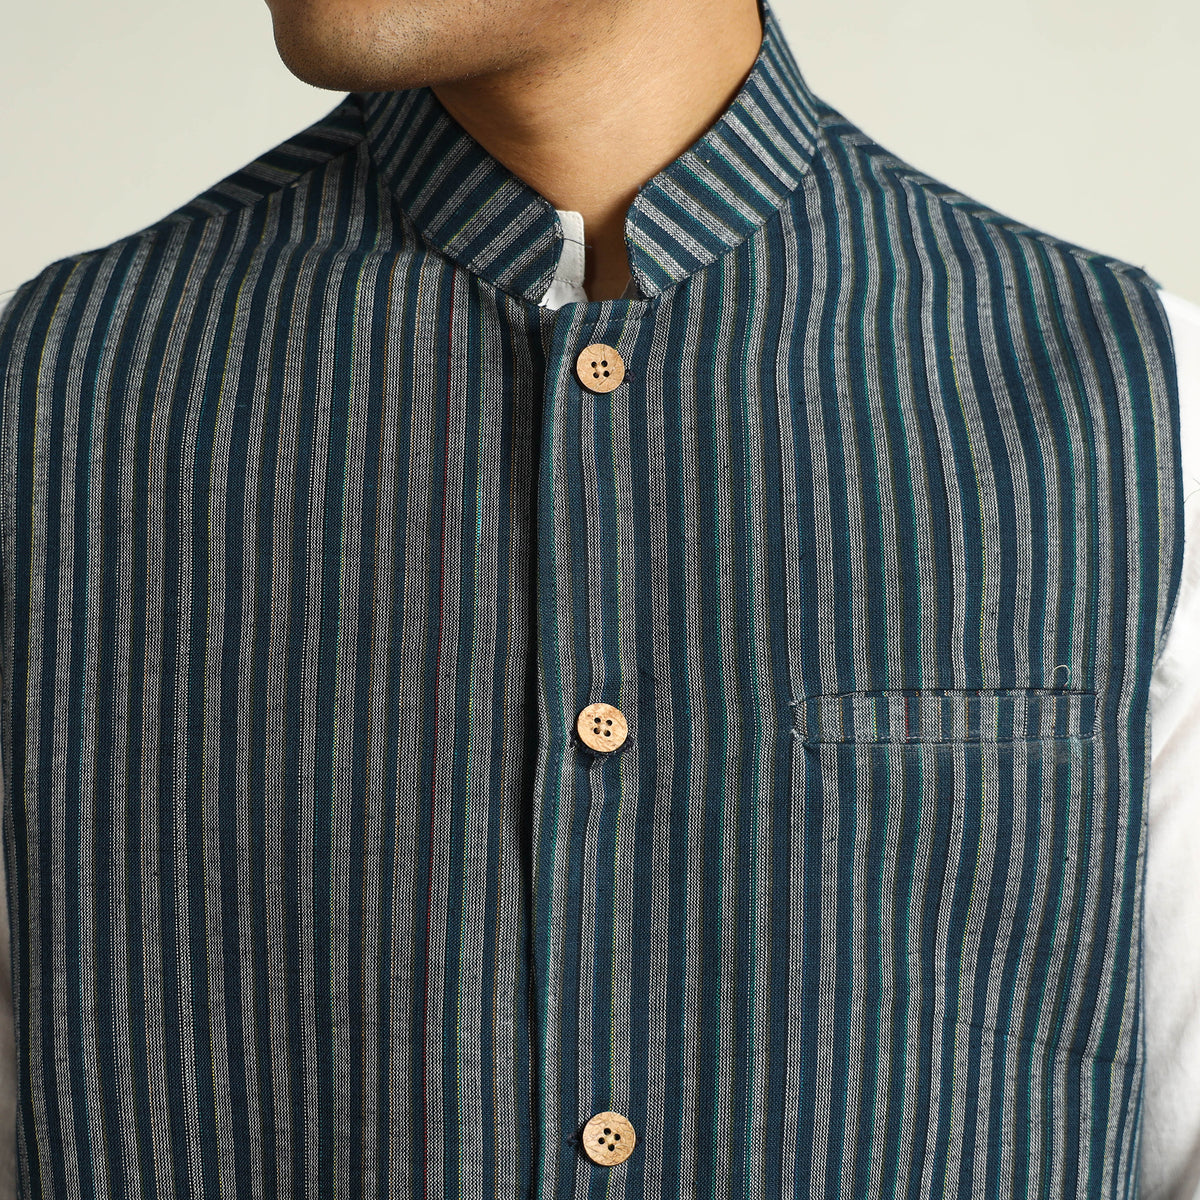 Black - Pure Cotton Handloom Men Nehru Jacket 09